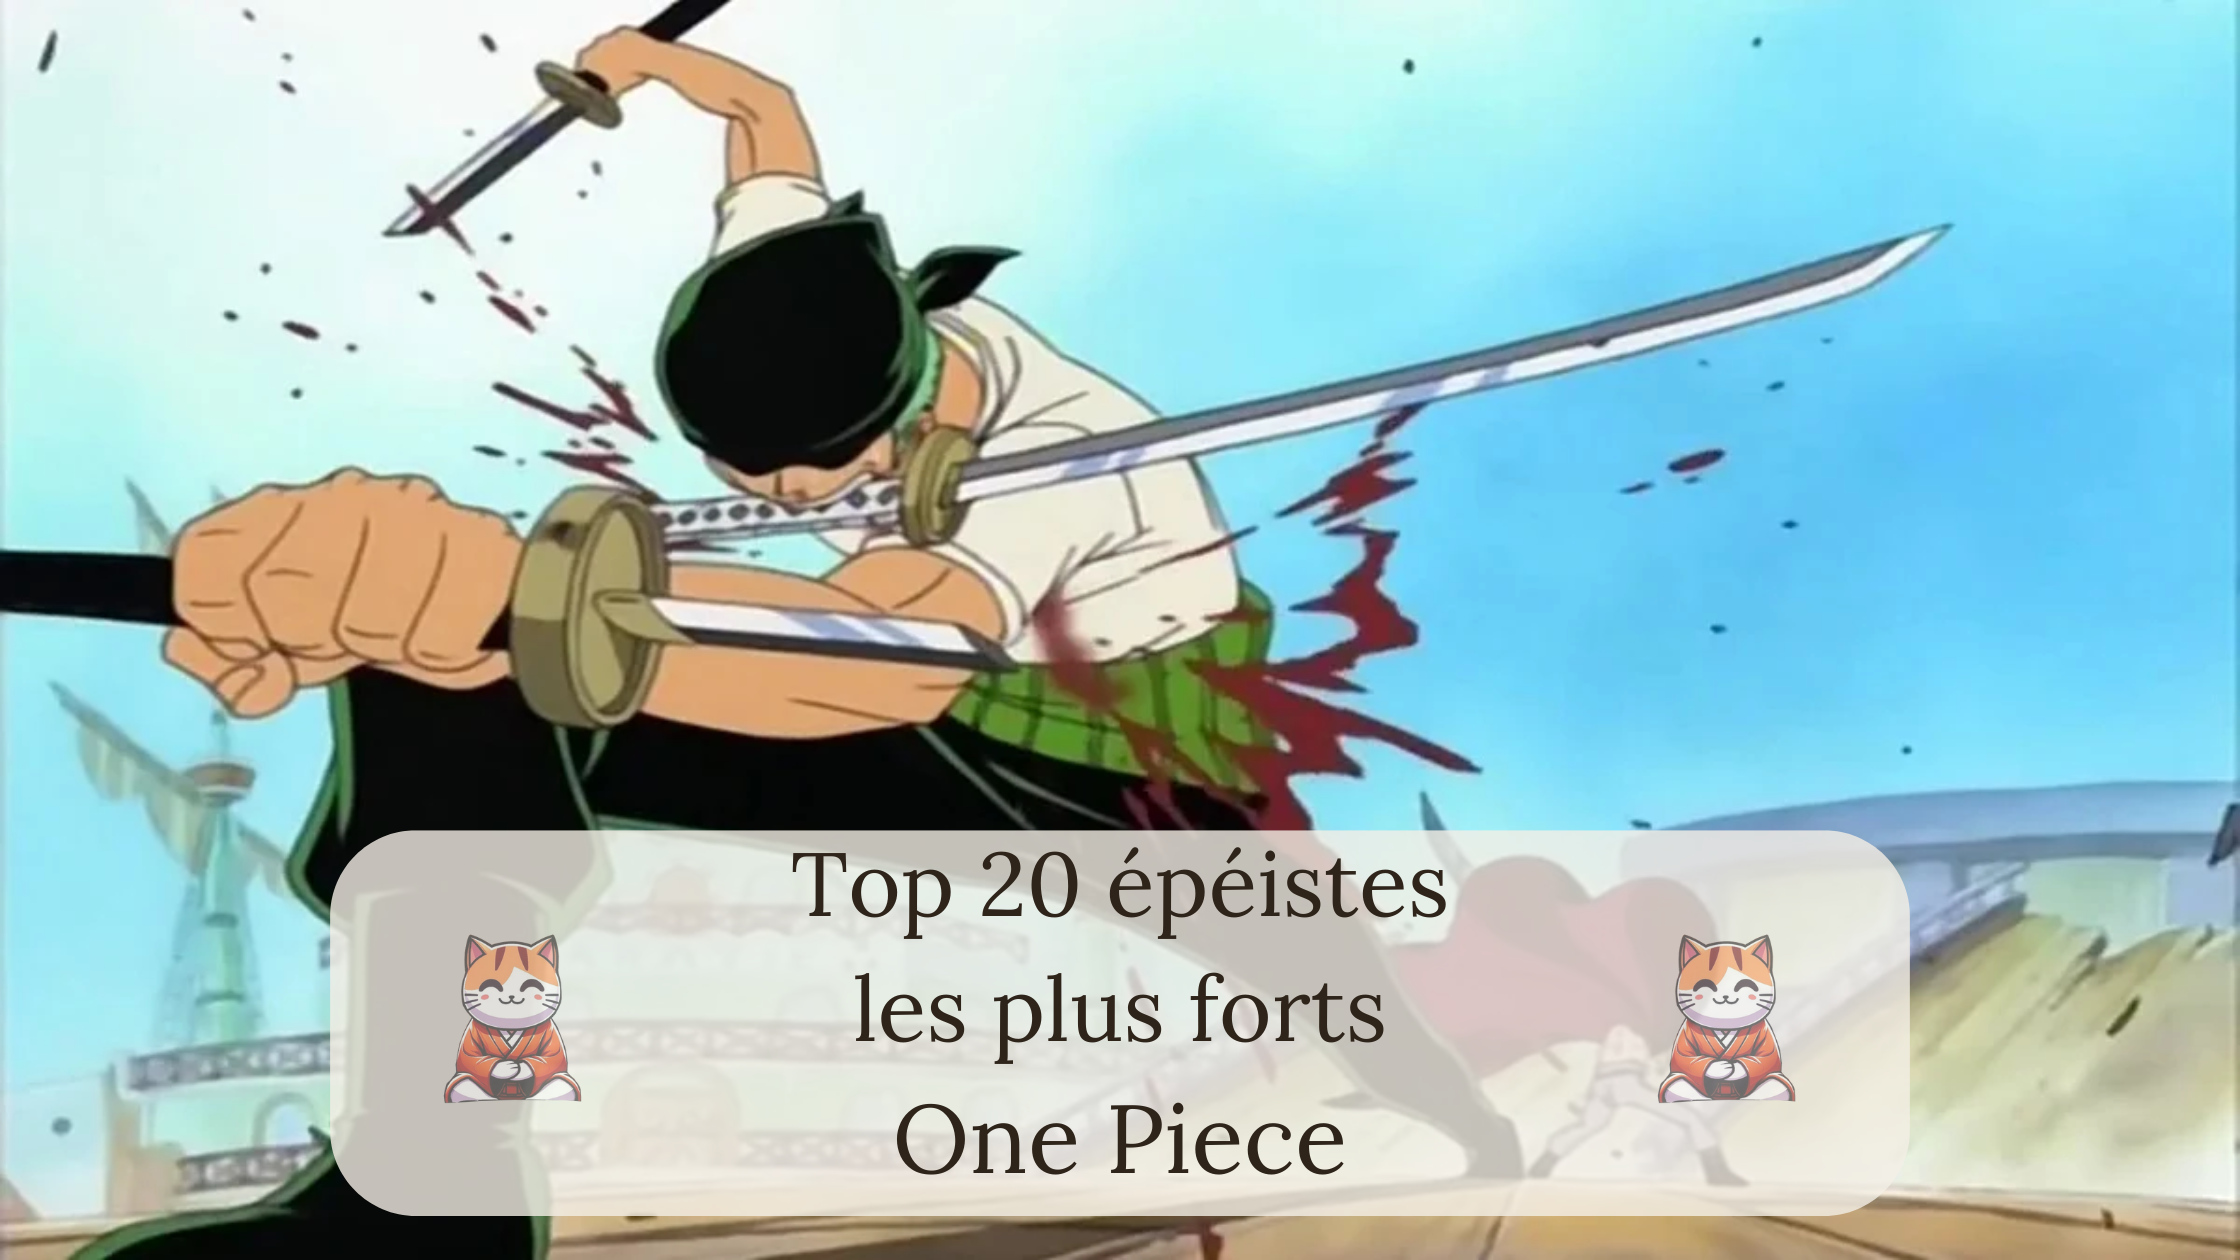 Top 20 épéistes les plus forts de One Piece